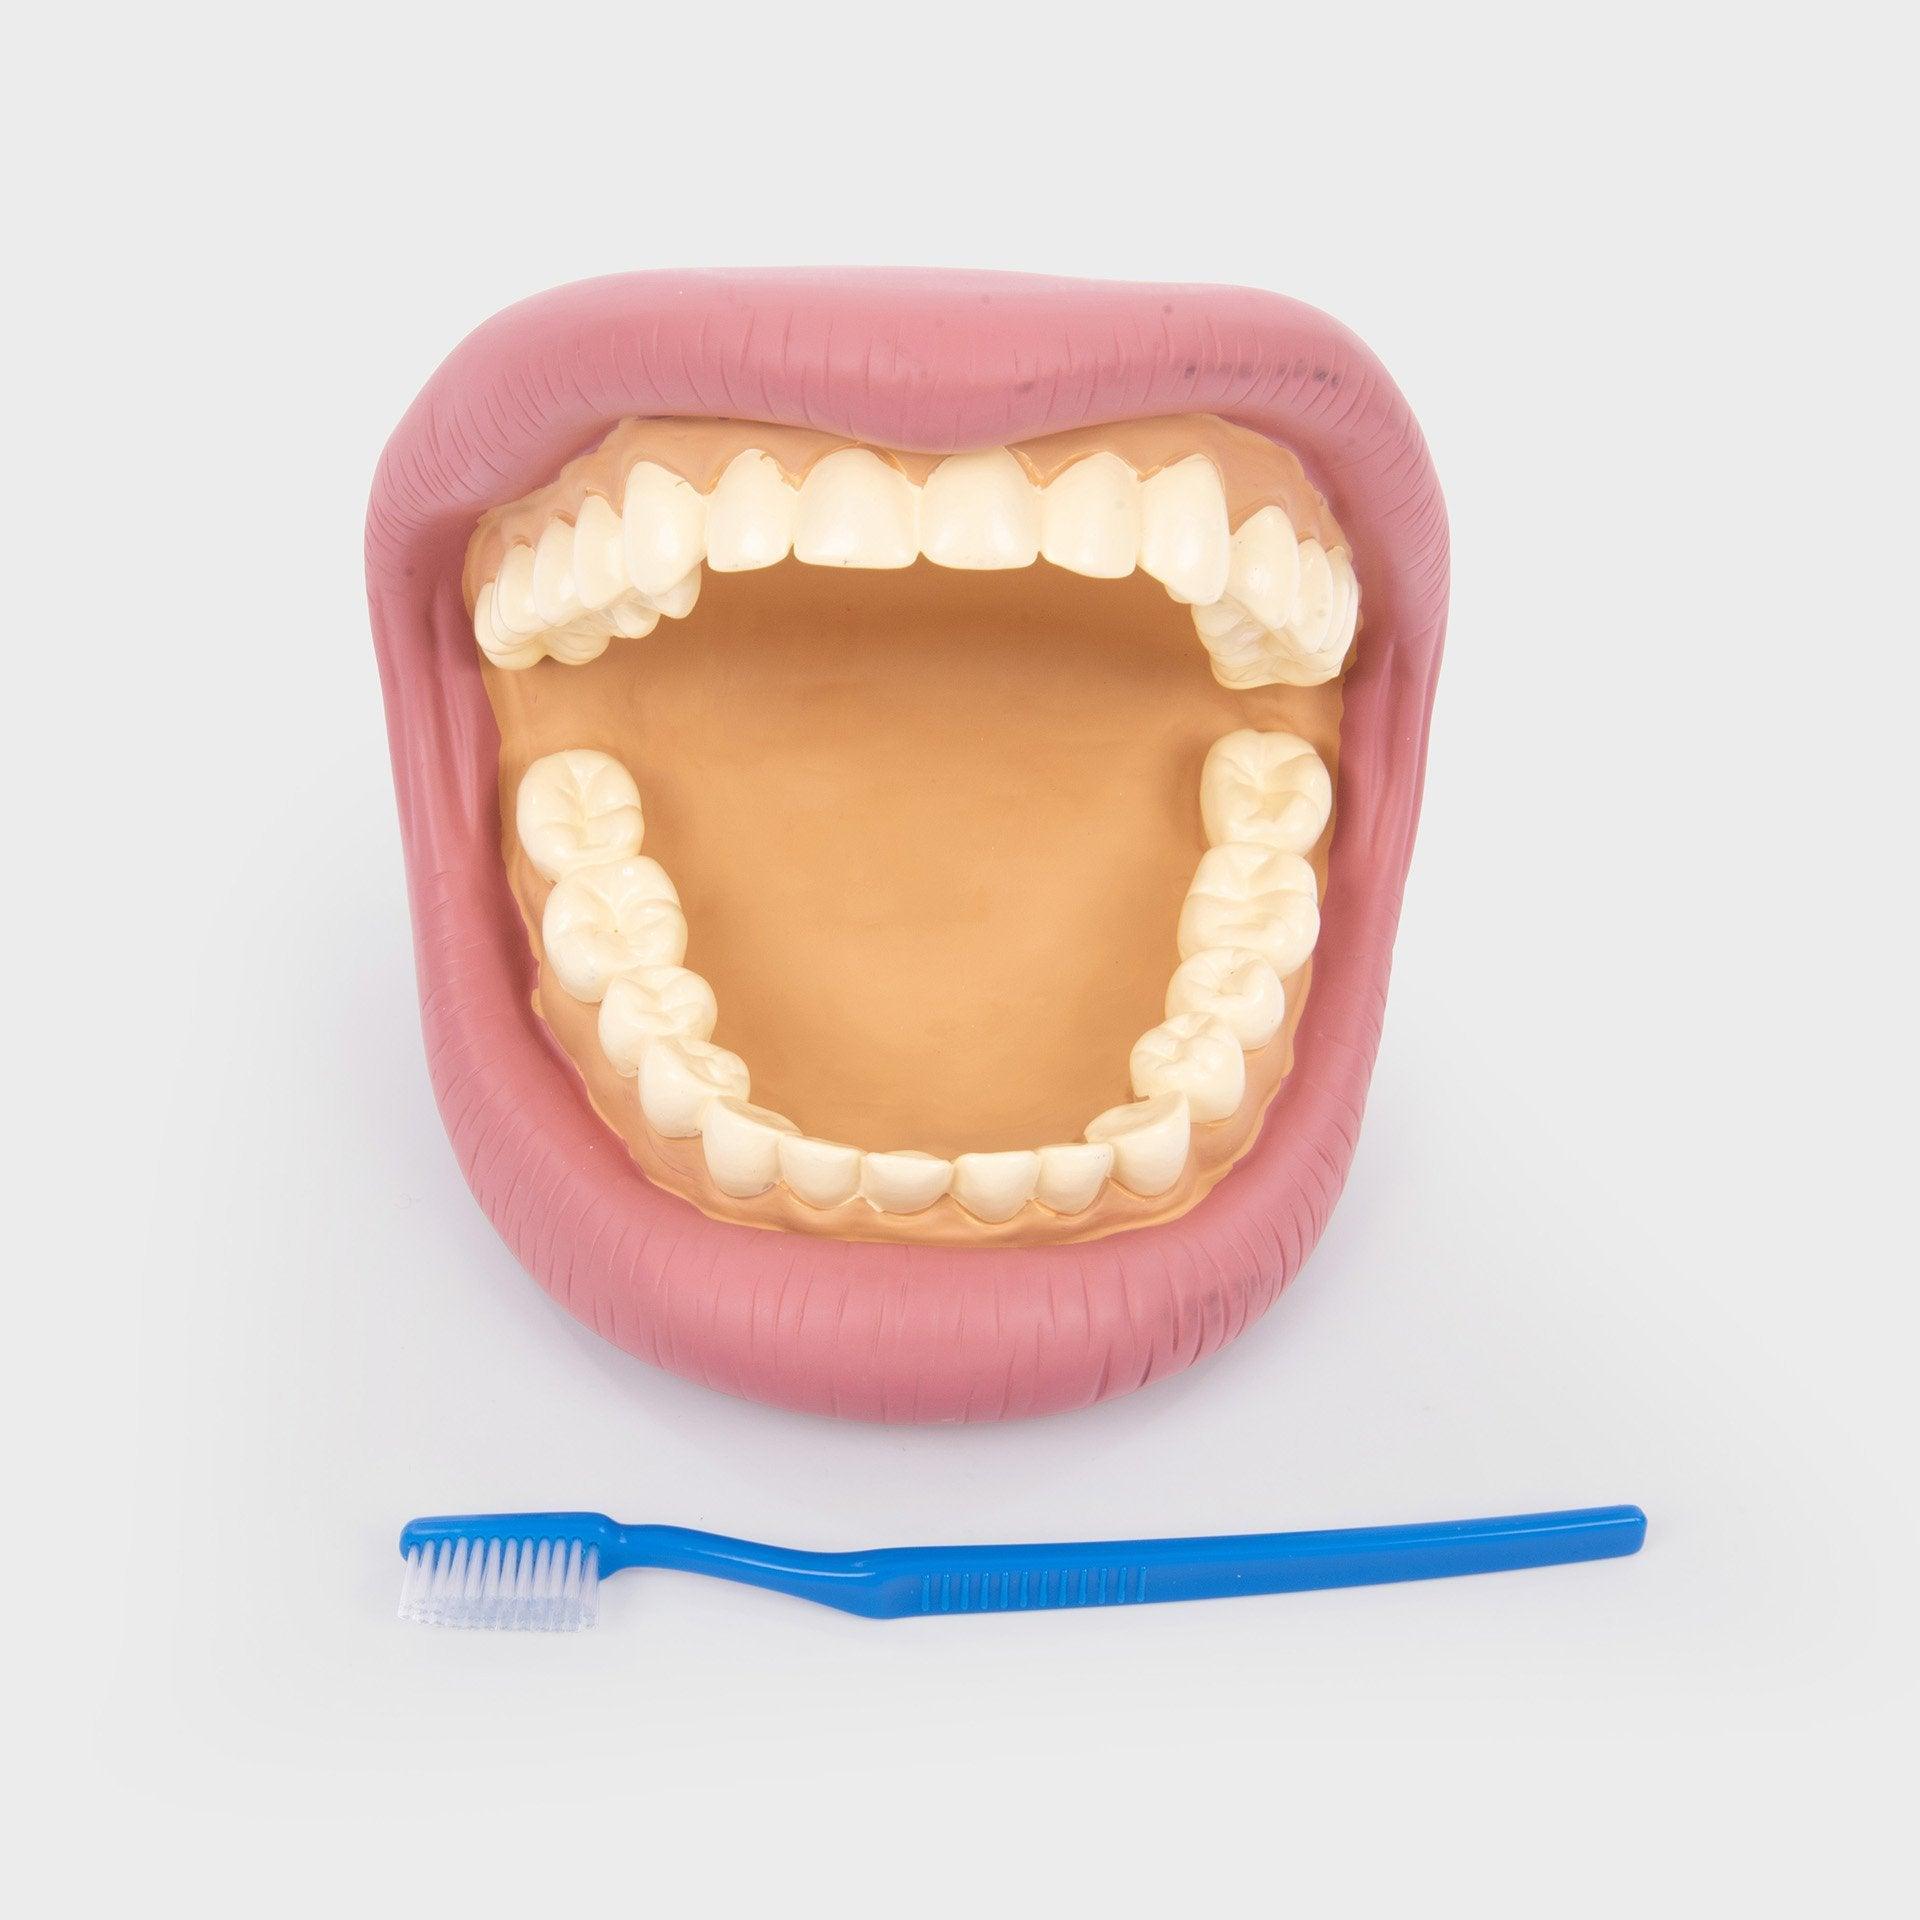 TickiT: Демонстрационен модел на челюст с гигантски зъби